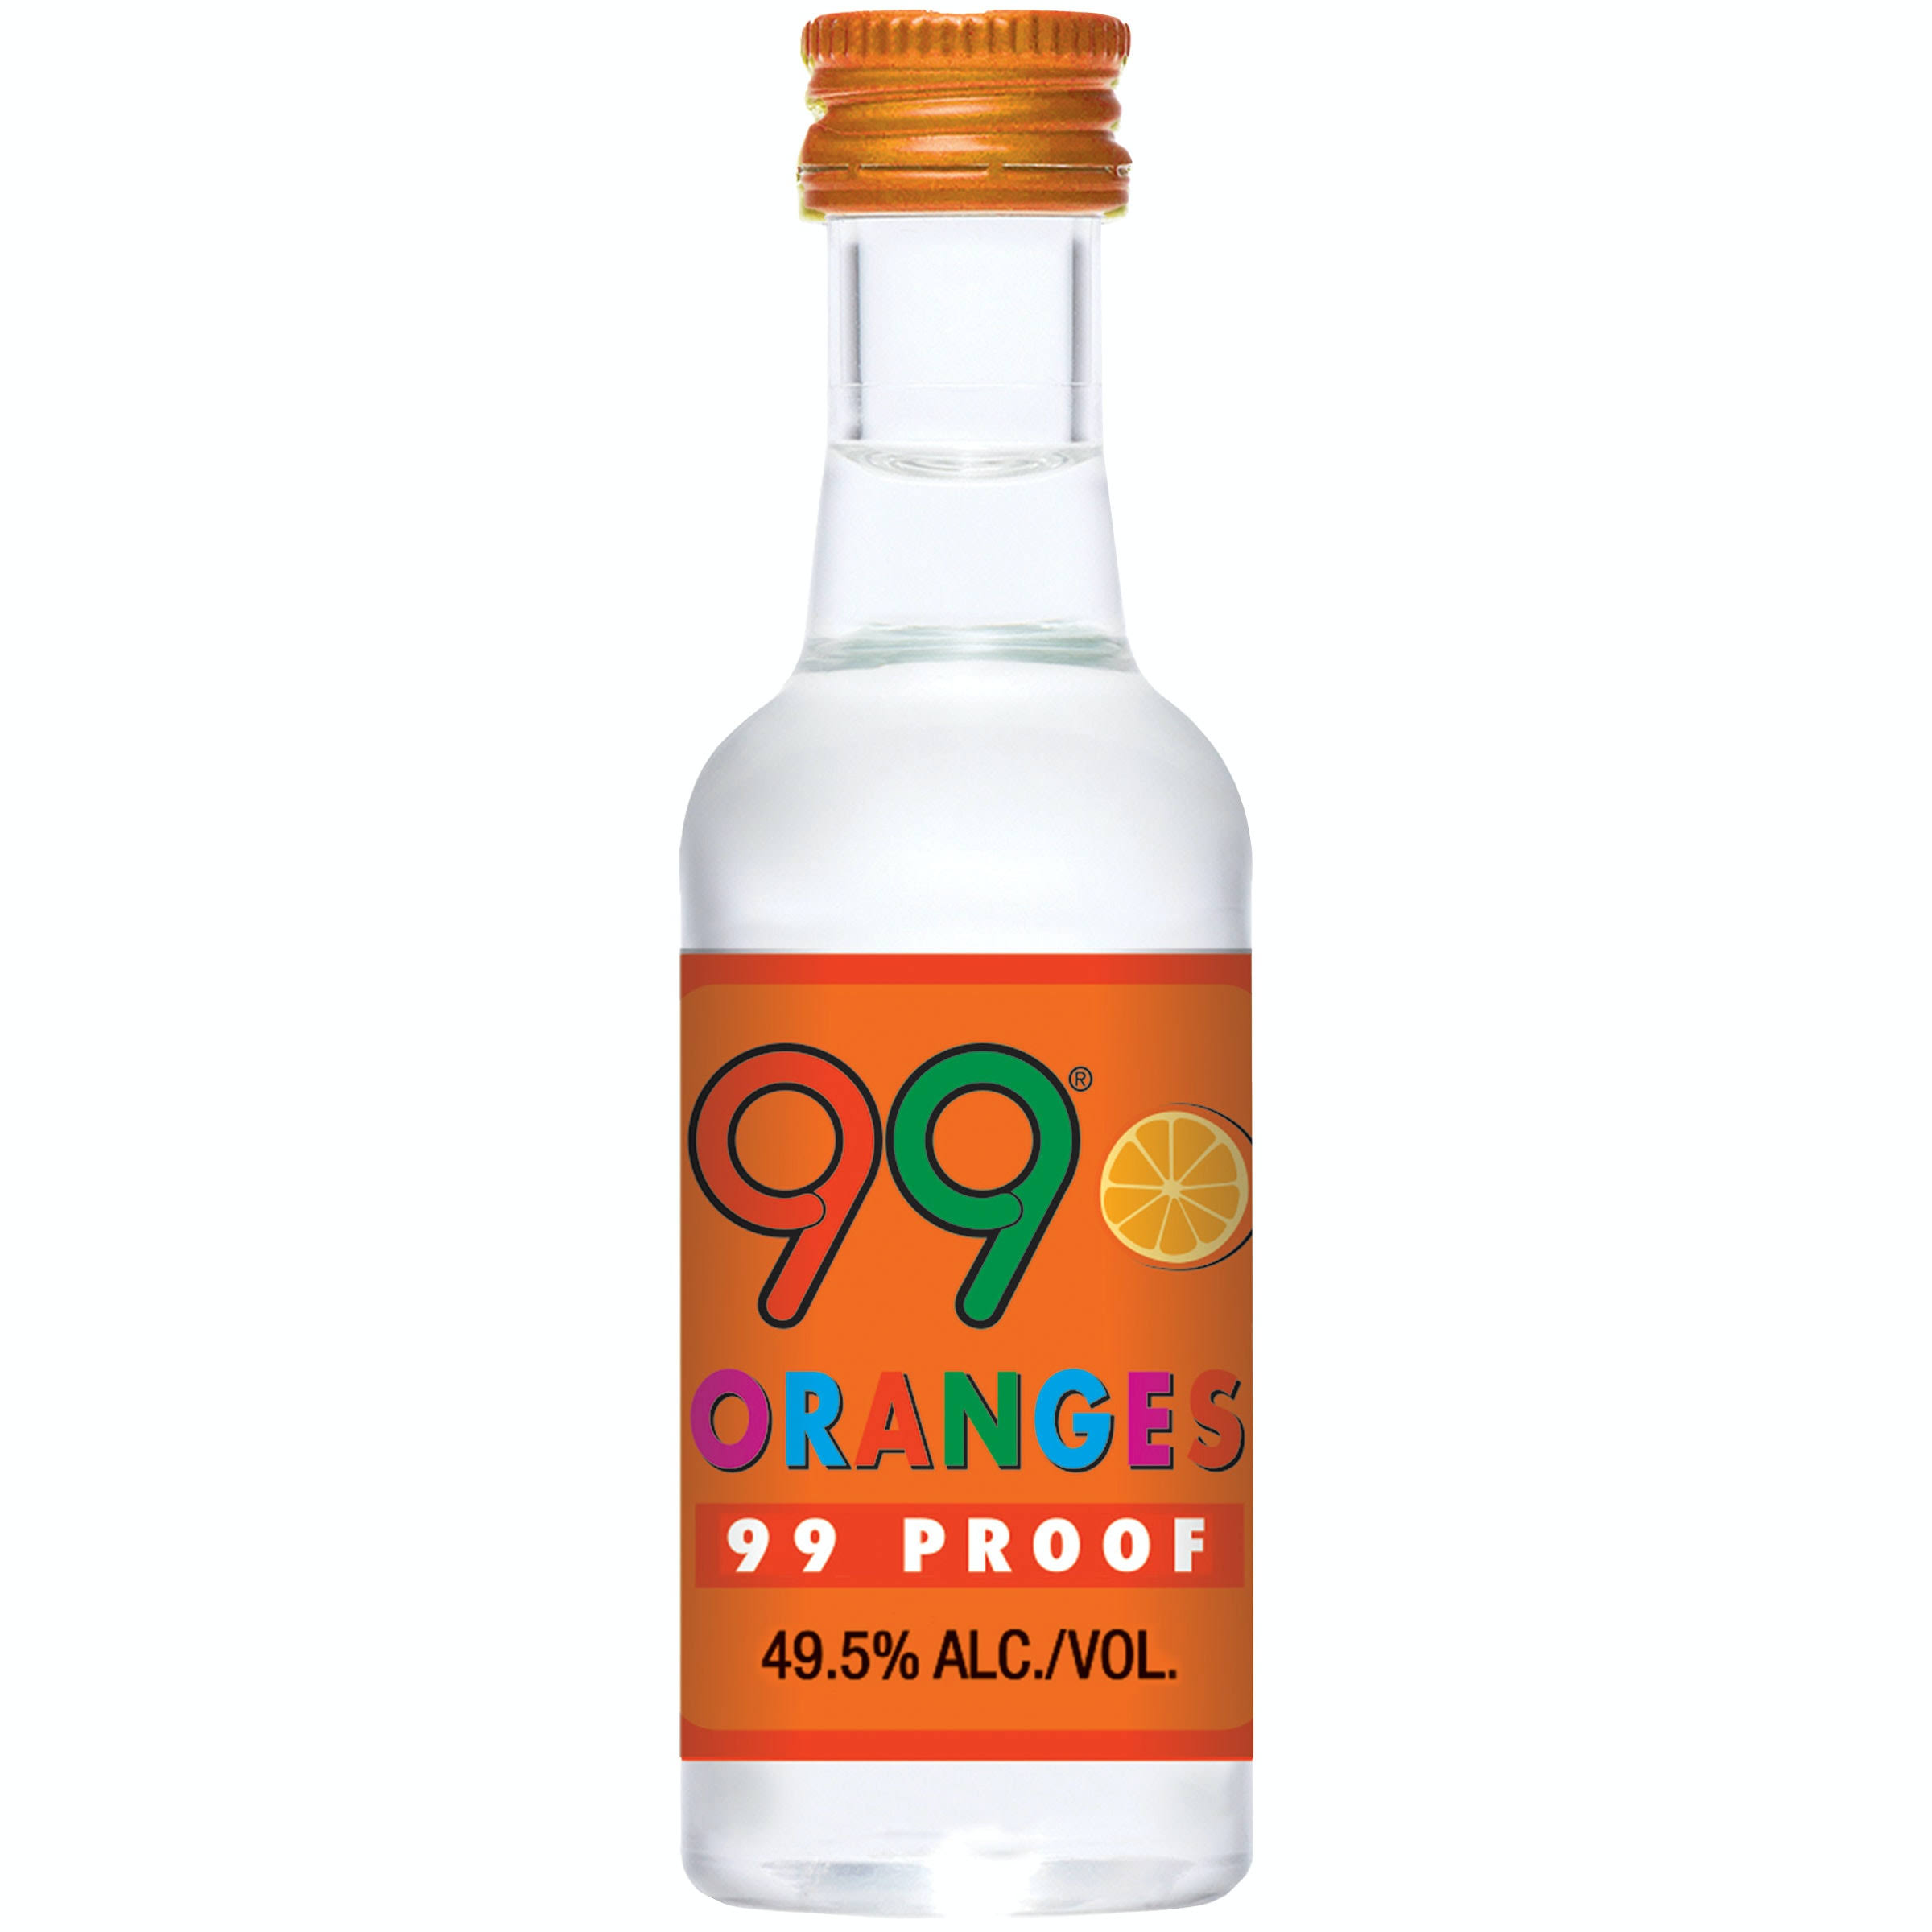 99 Orange Schnapps - 50 ml bottle